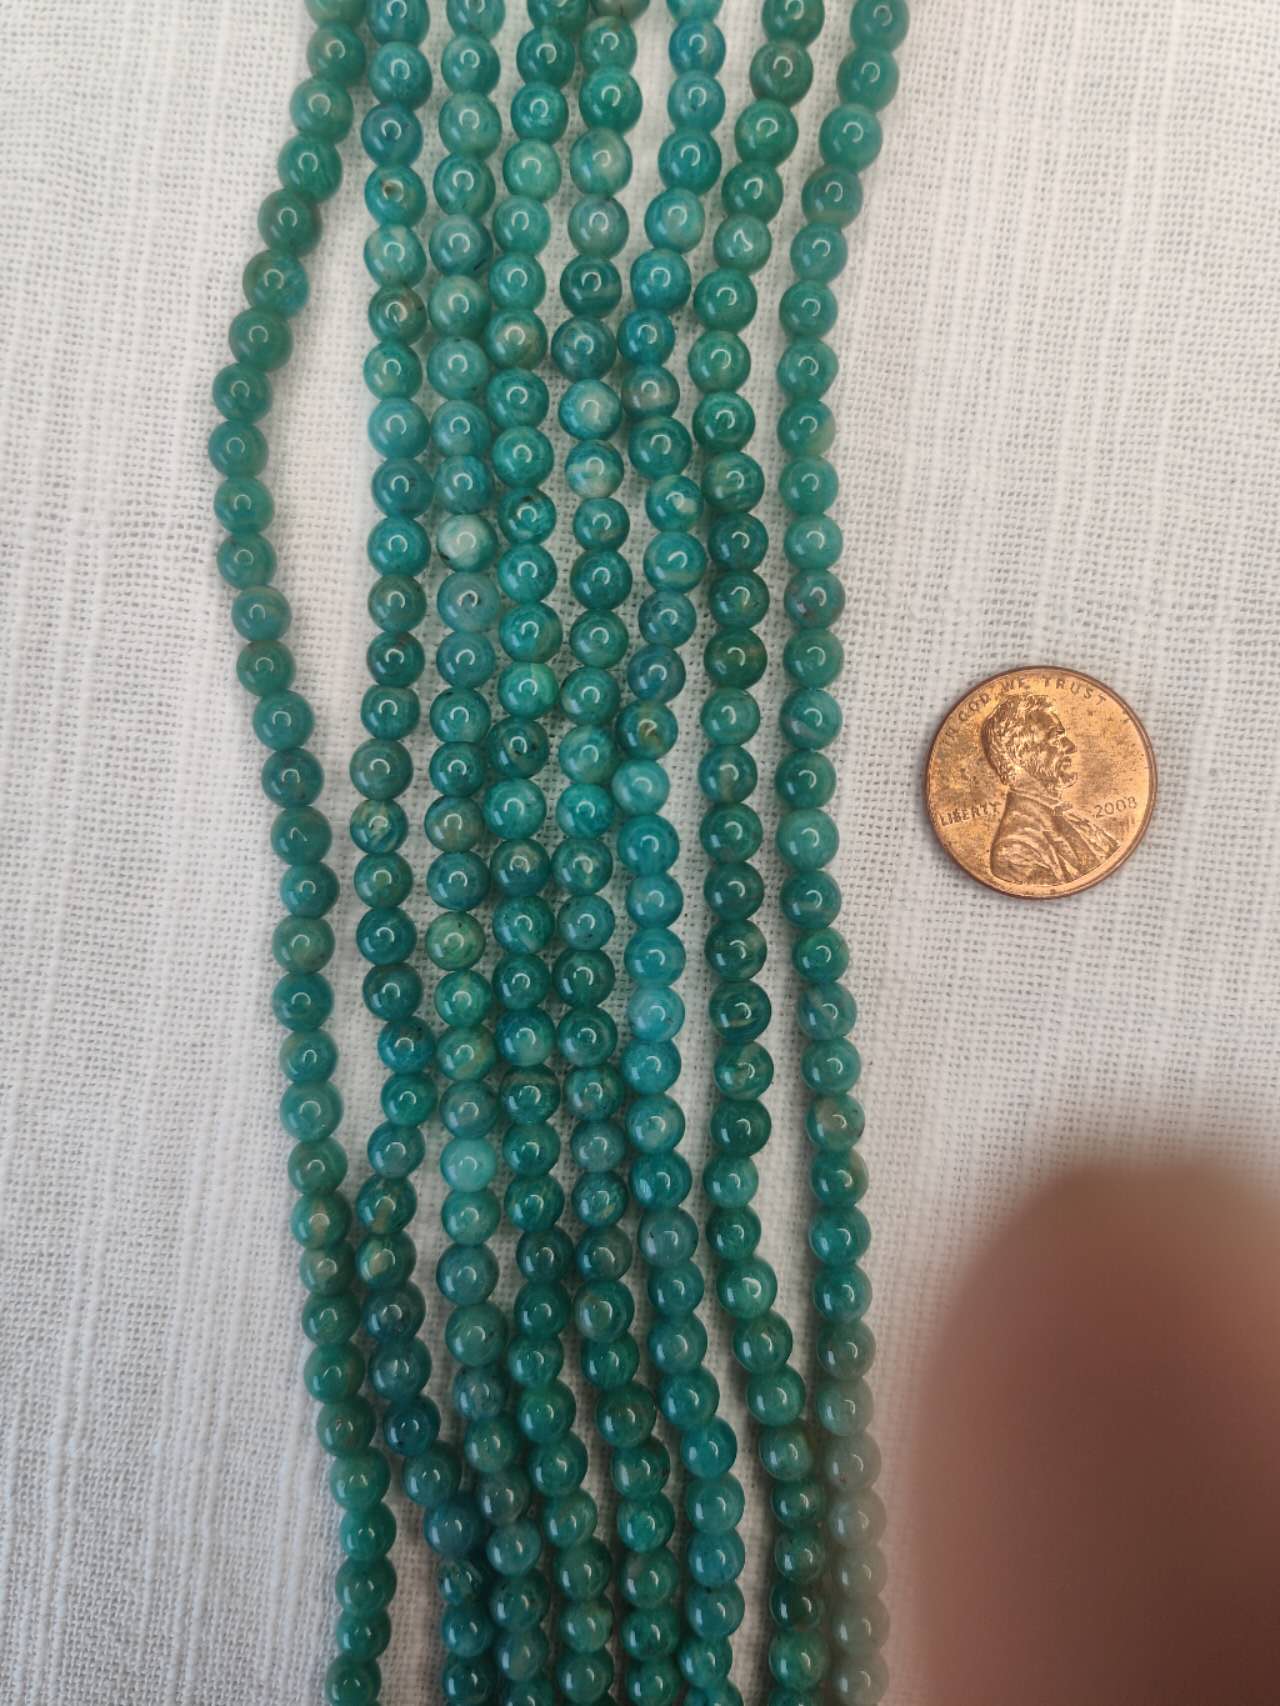 Russian Amazonite 5mm round beads AA grade 15.5"strand